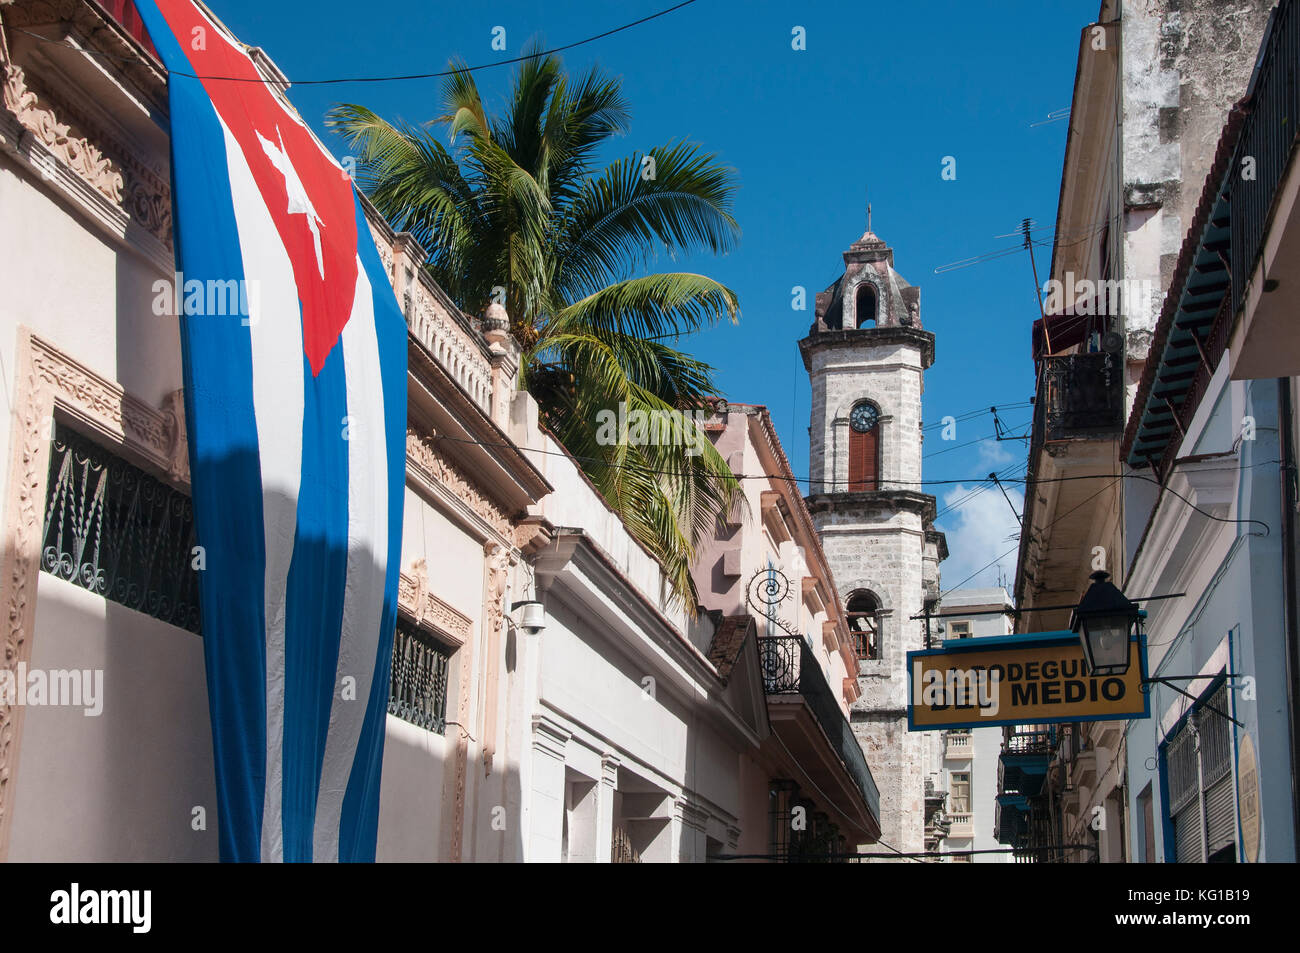 La bandiera cubana adorna le pareti in Calle Empedrado sostenuta da una torre campanaria della Catedral de San Cristobal, Habana Vieja, Havana, Cuba Foto Stock